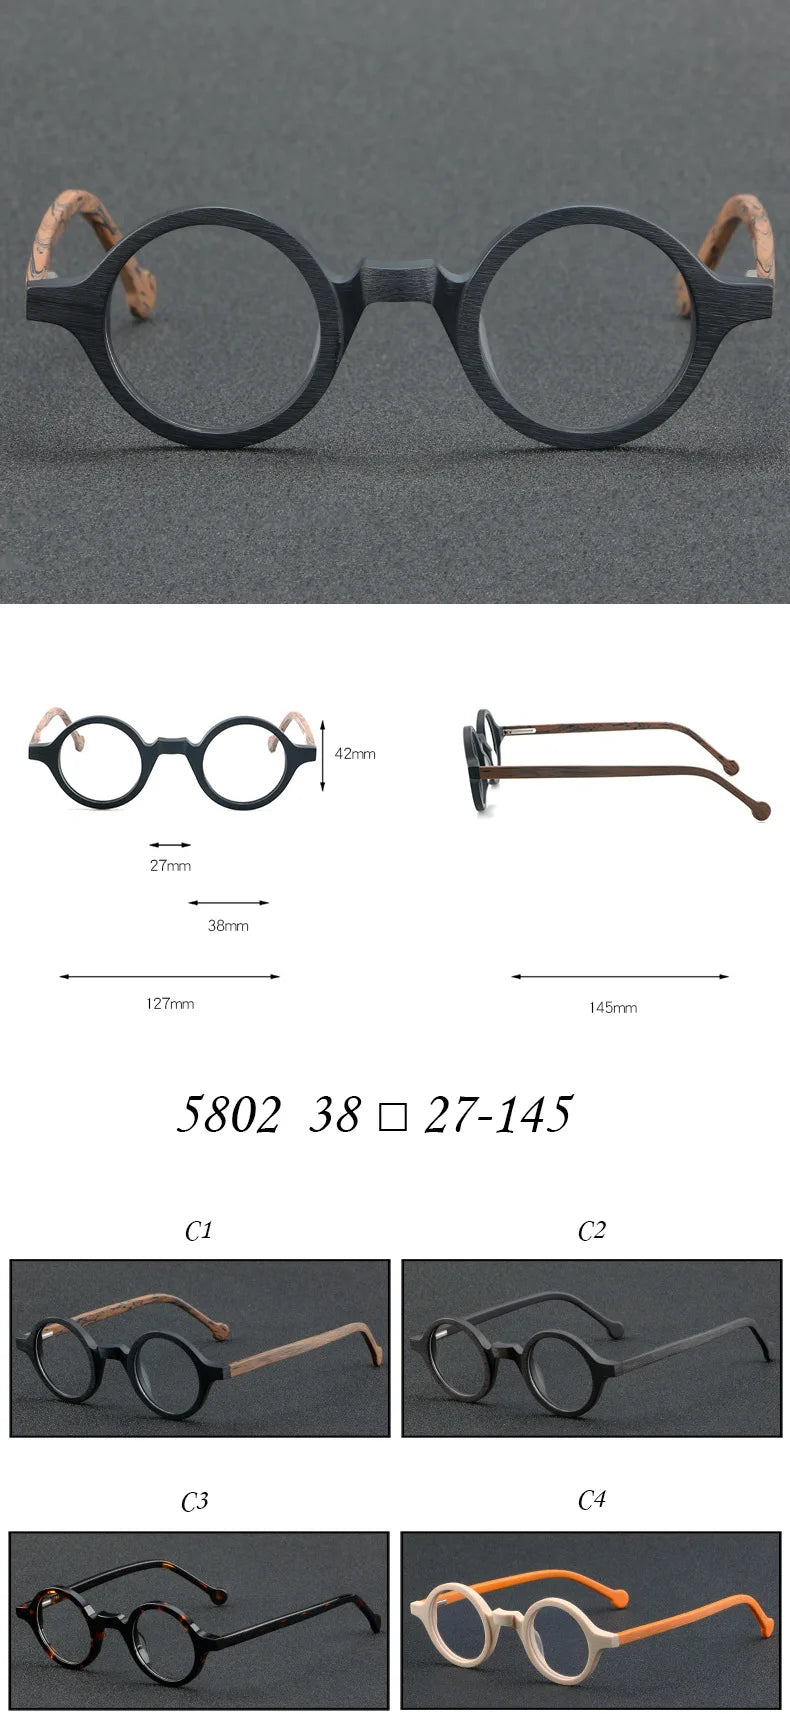 Cubojue Unisex Full Rim Small Round Acetate Reading Glasses 5802 Reading Glasses Cubojue   